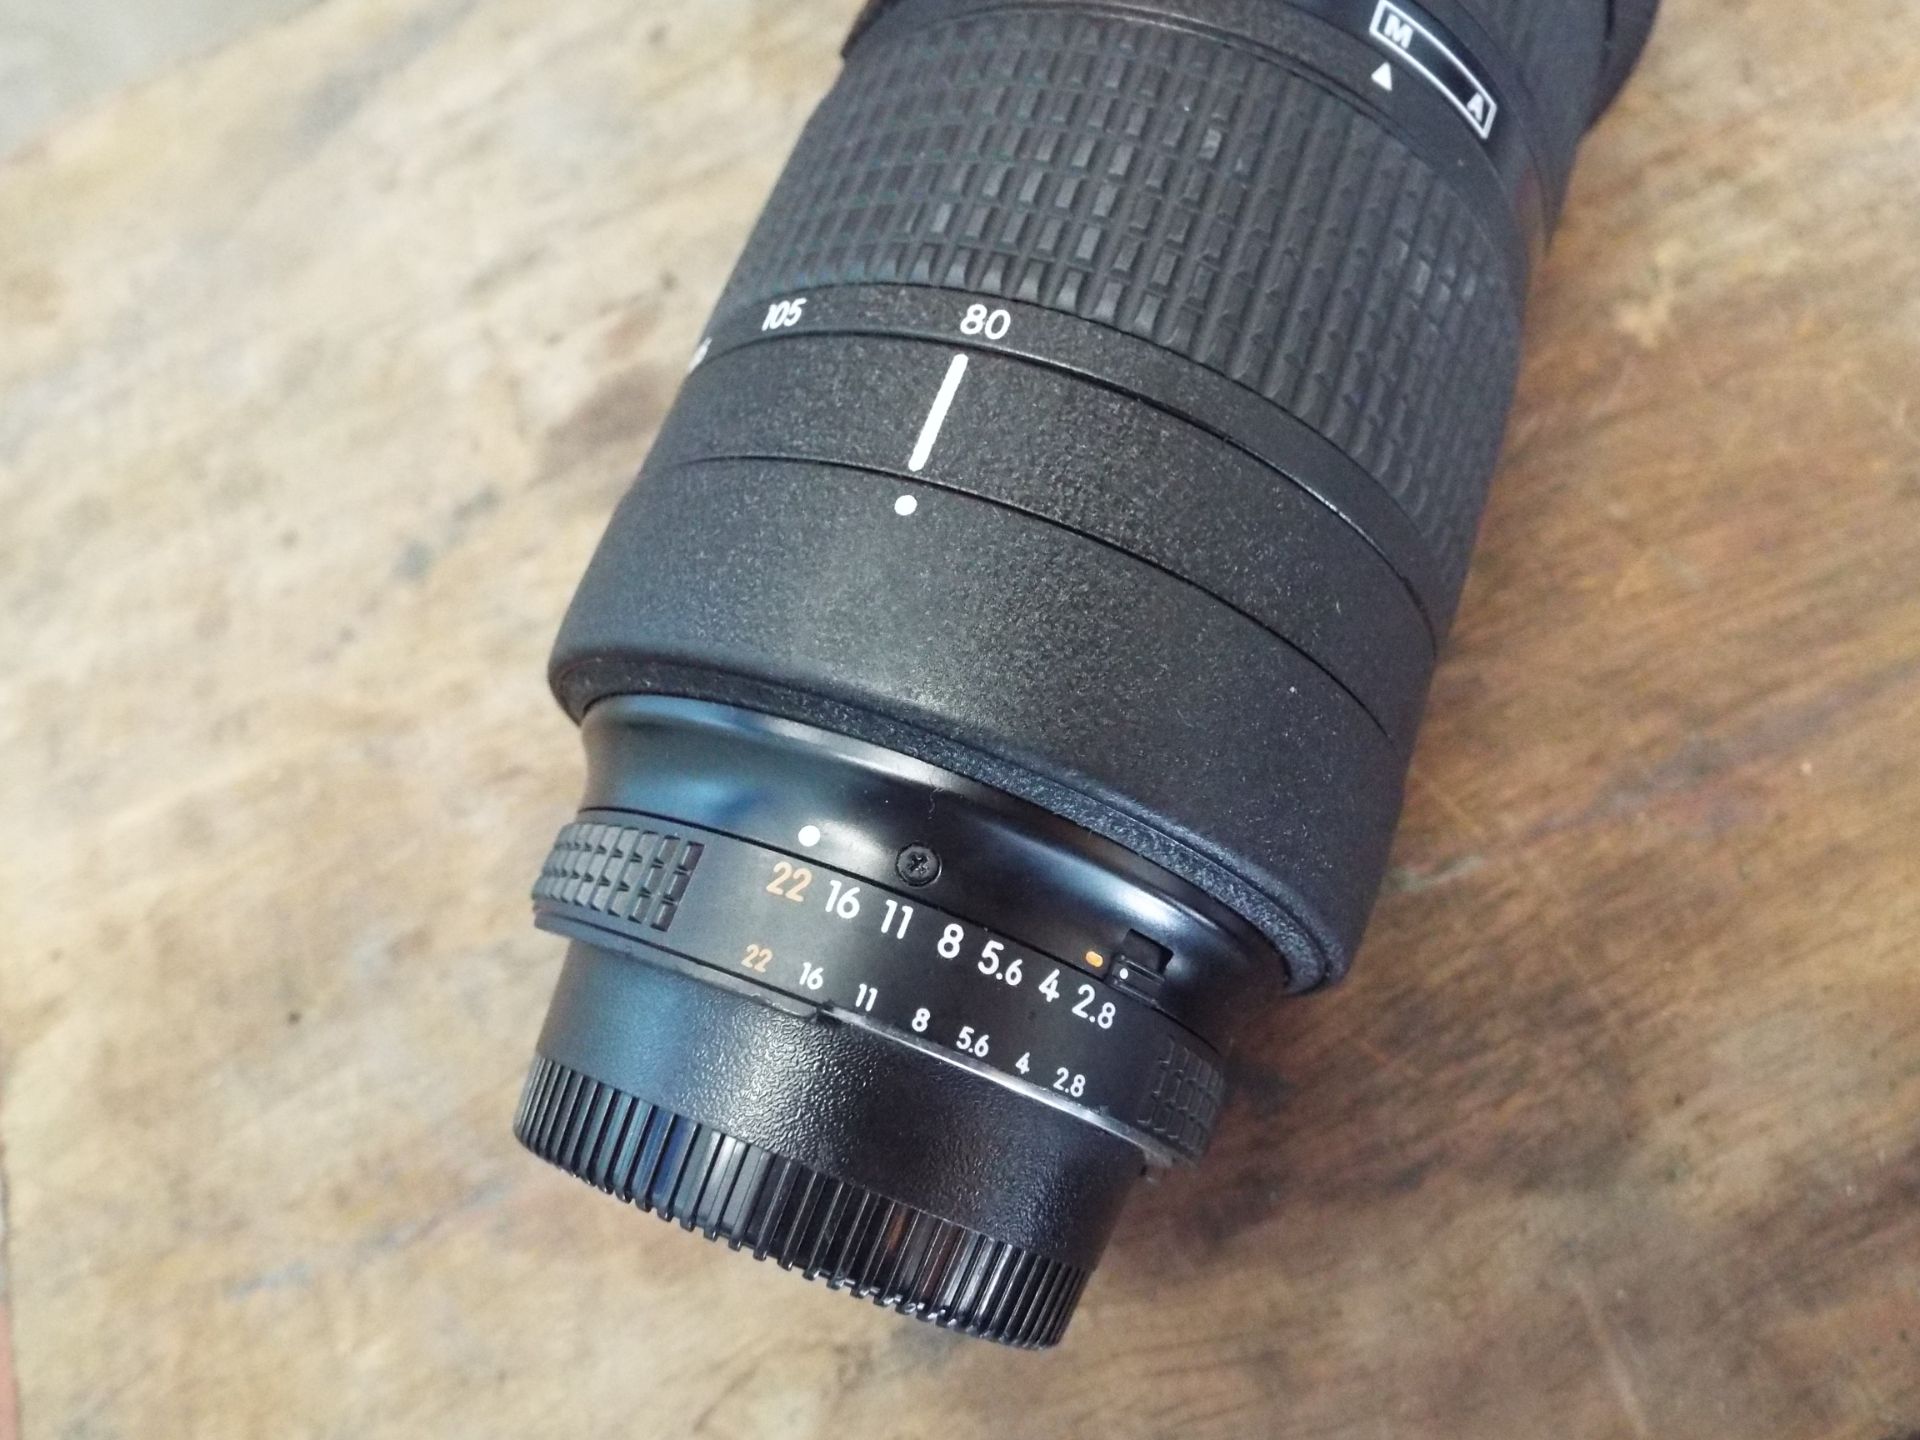 Nikon ED AF Nikkor 80-200mm 1:2.8 D Lense with Leather Carry Case - Image 4 of 8